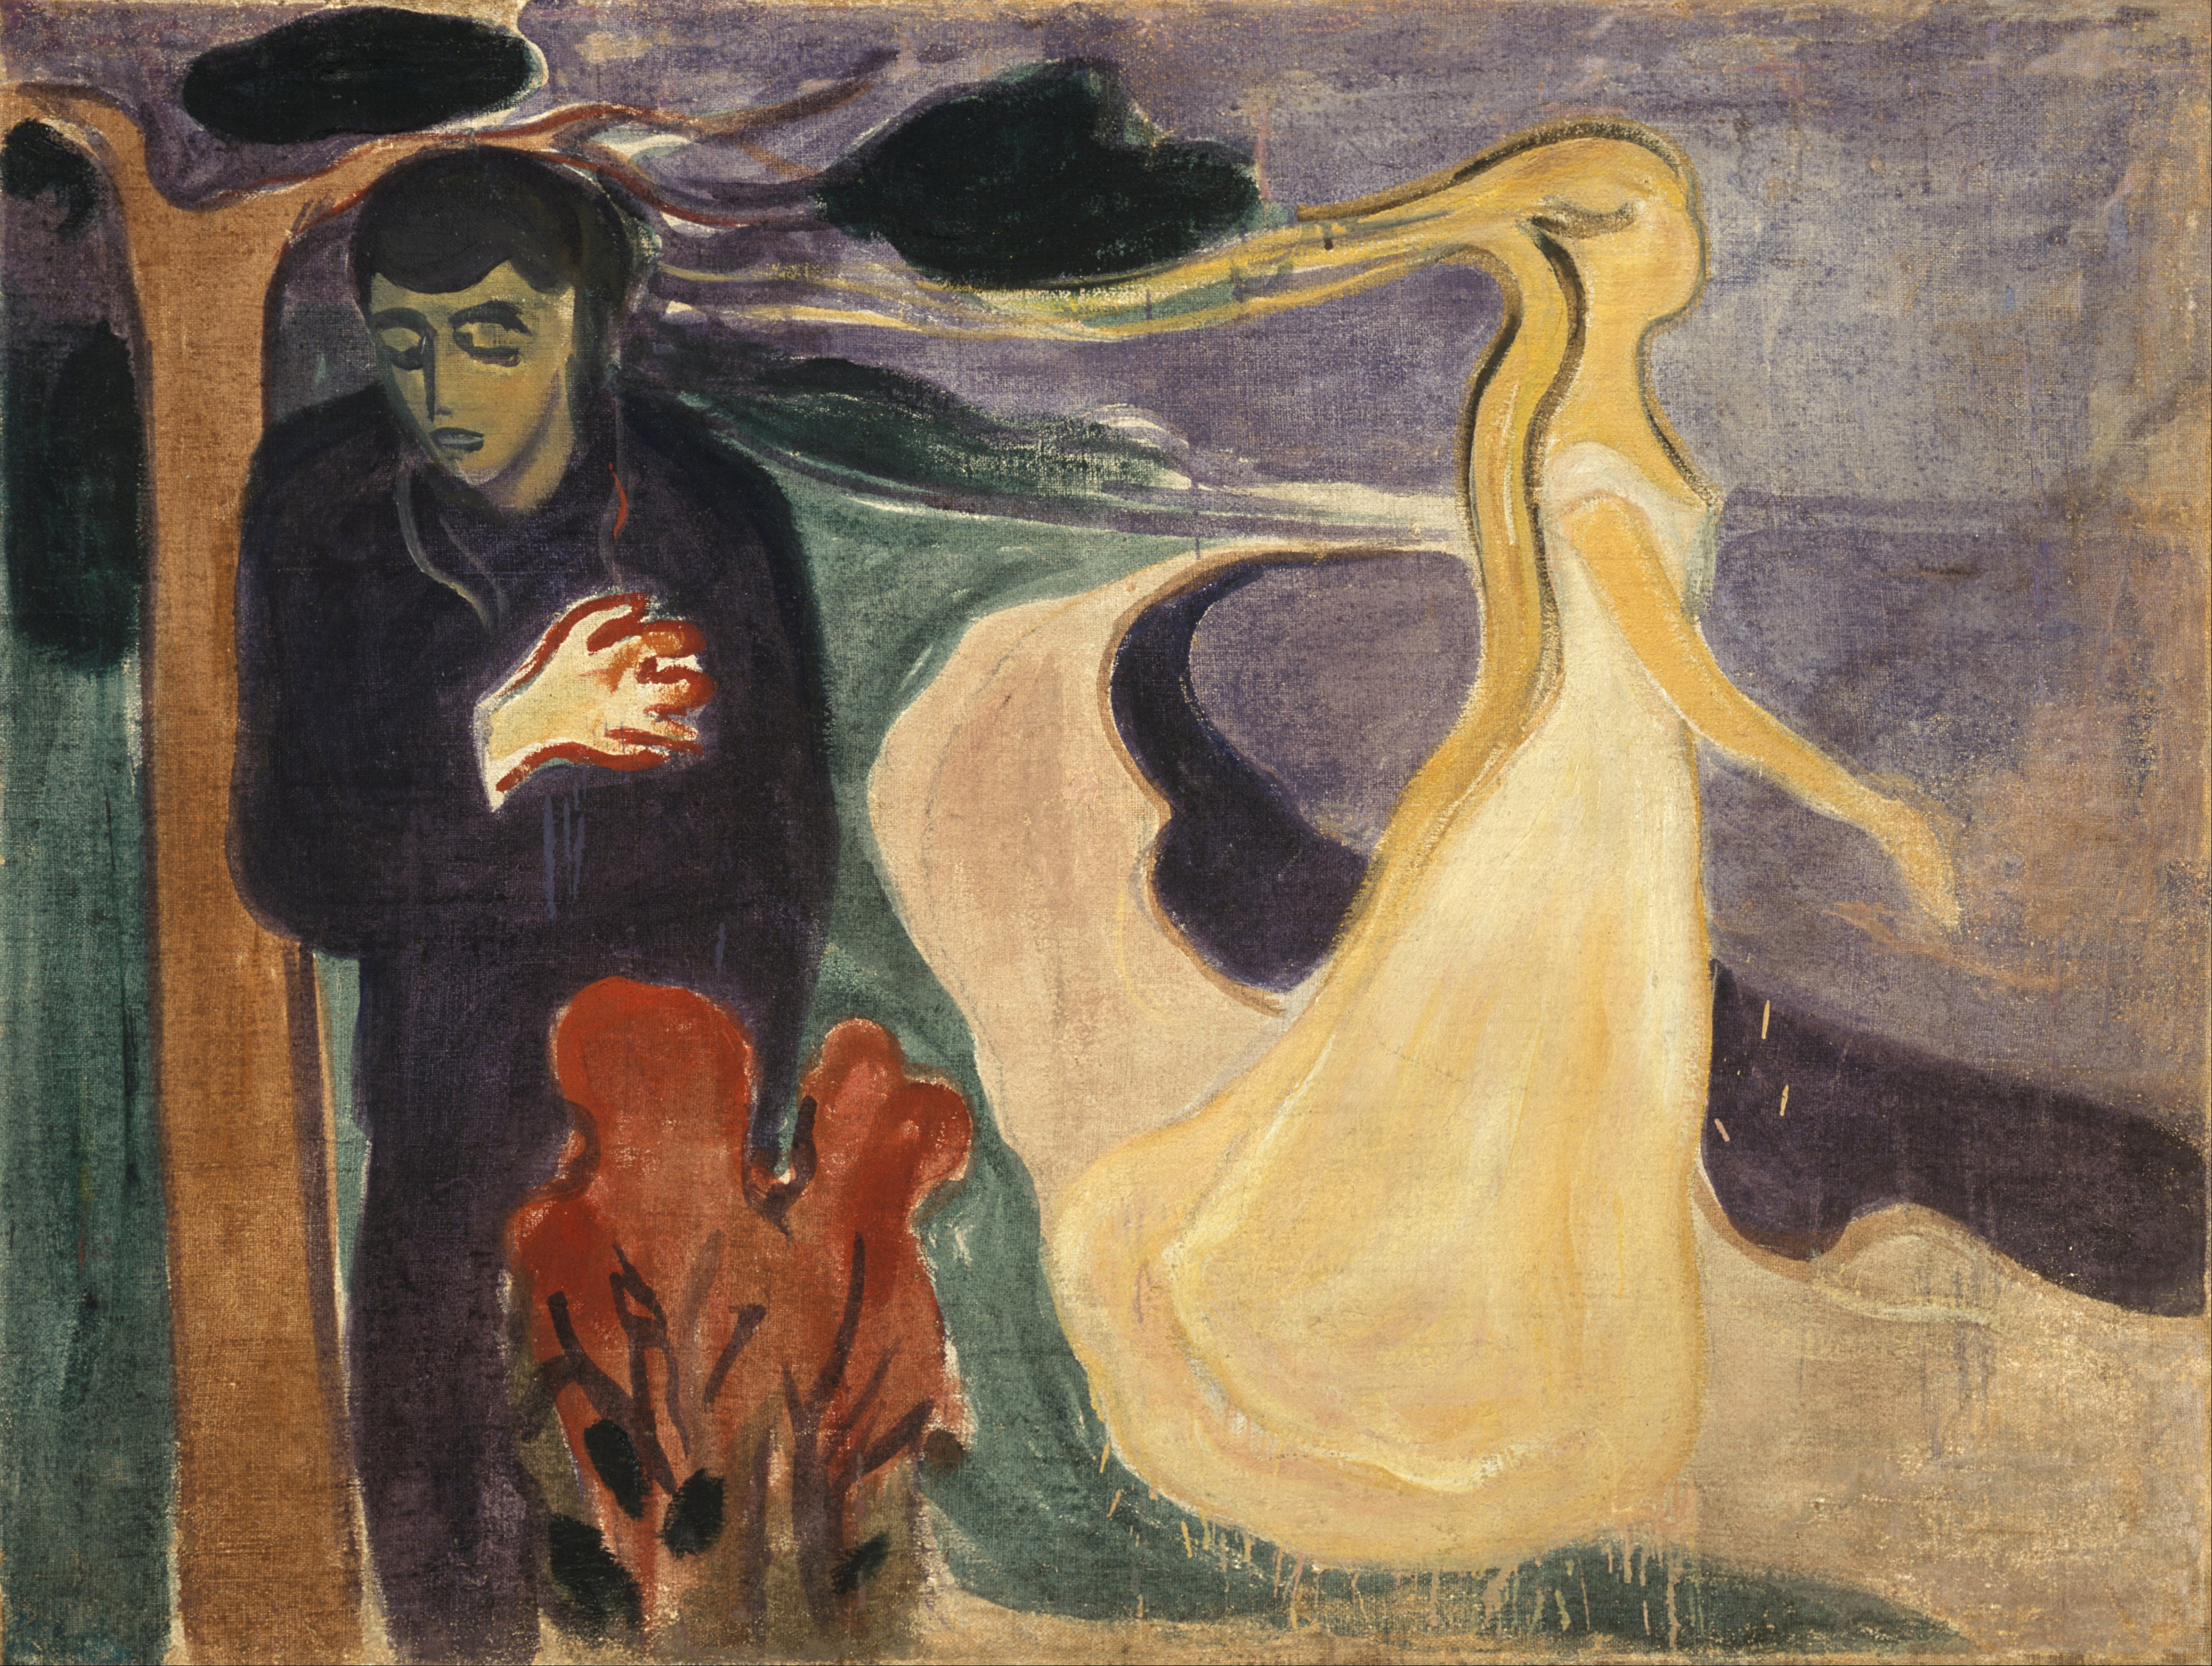 Elválás by Edvard Munch - 1896 - 96 × 127 cm 